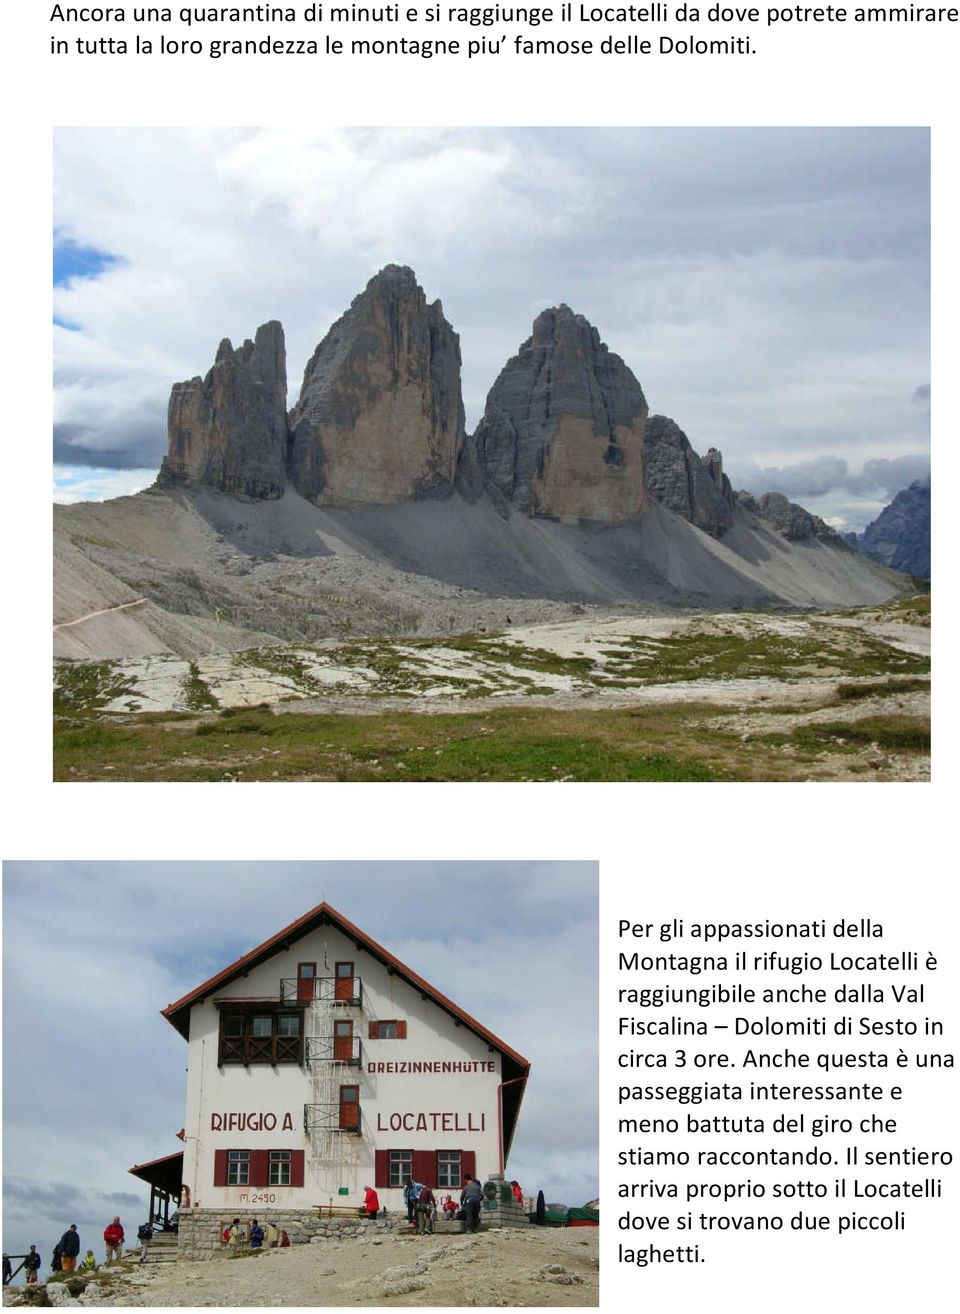 Per gli appassionati della Montagna il rifugio Locatelli è raggiungibile anche dalla Val Fiscalina Dolomiti di